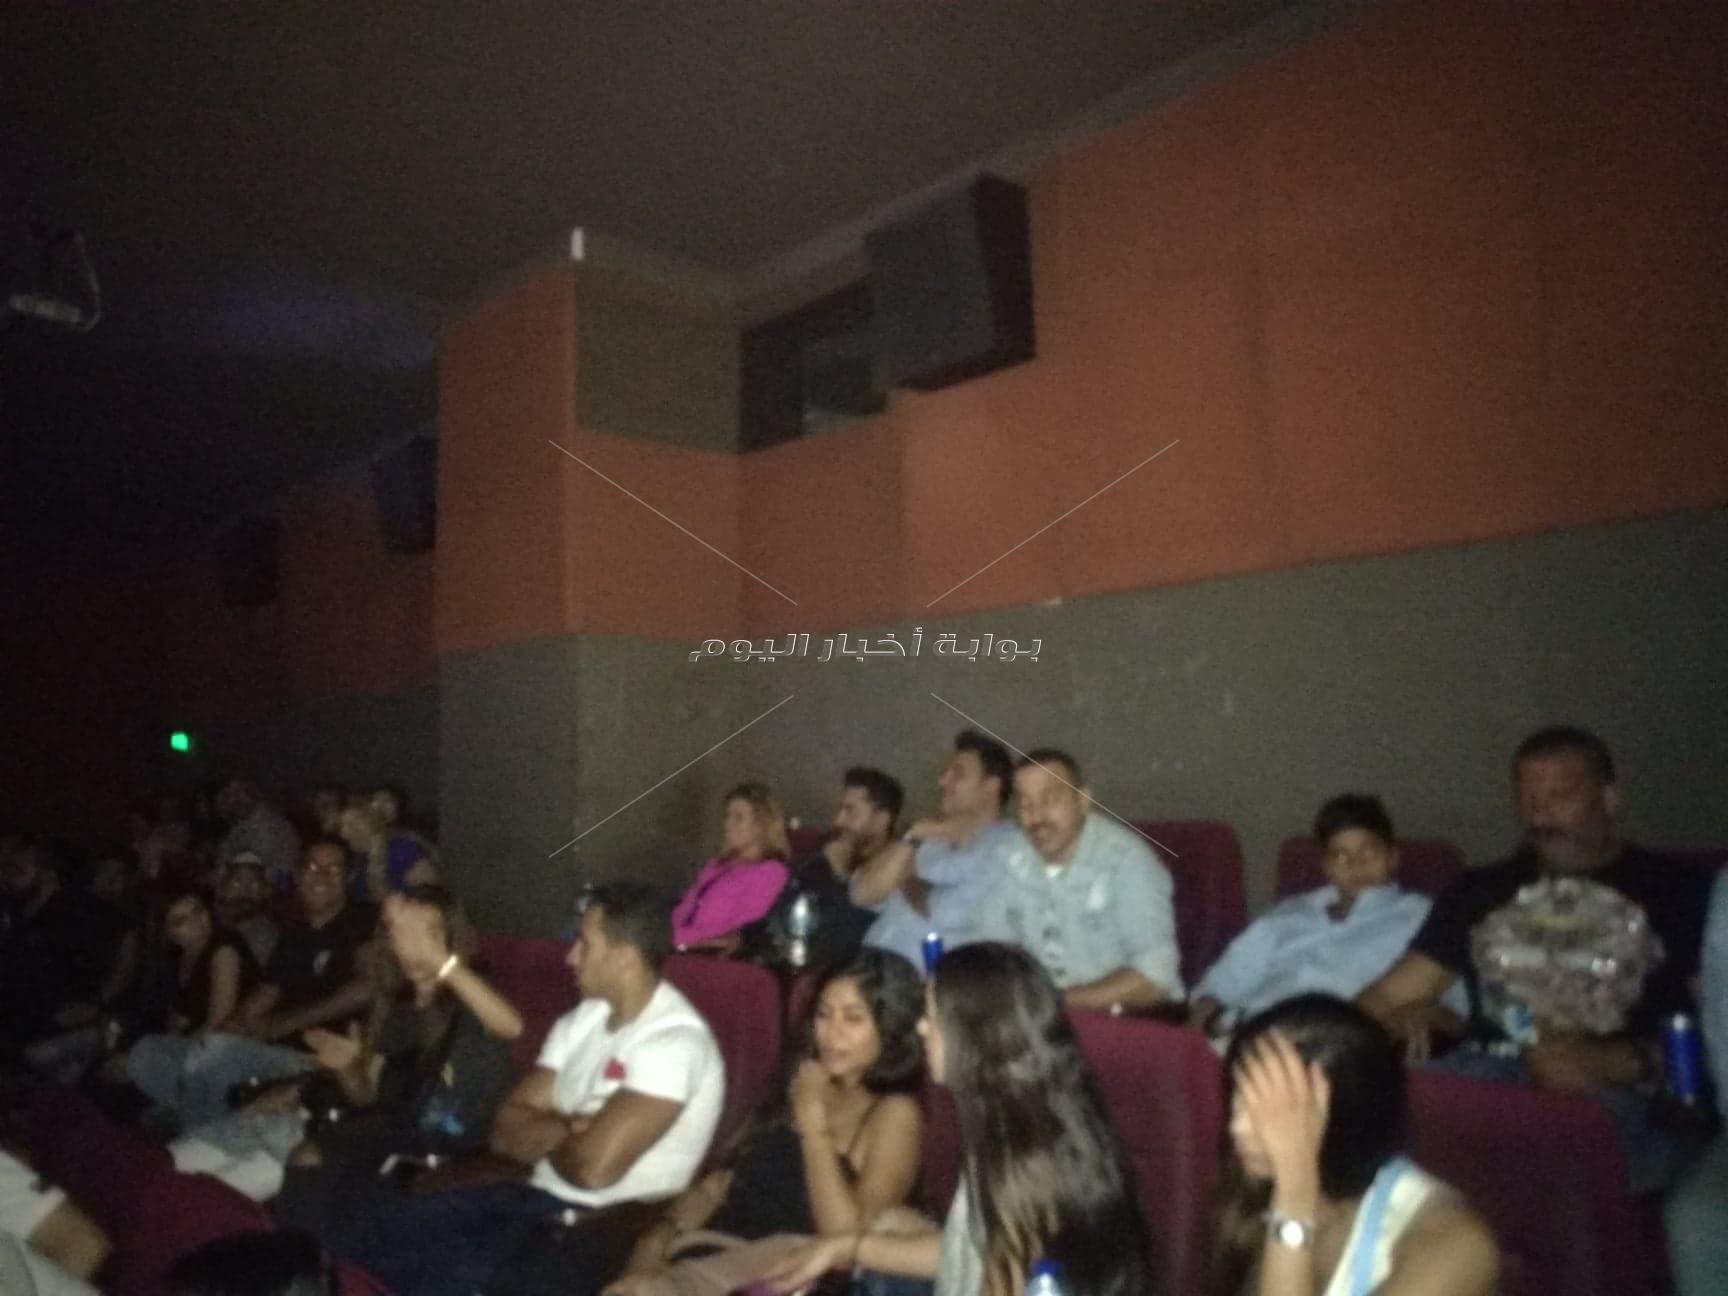 تامر حسني يشاهد «البدلة» مع الجمهور في سيتي ستارز